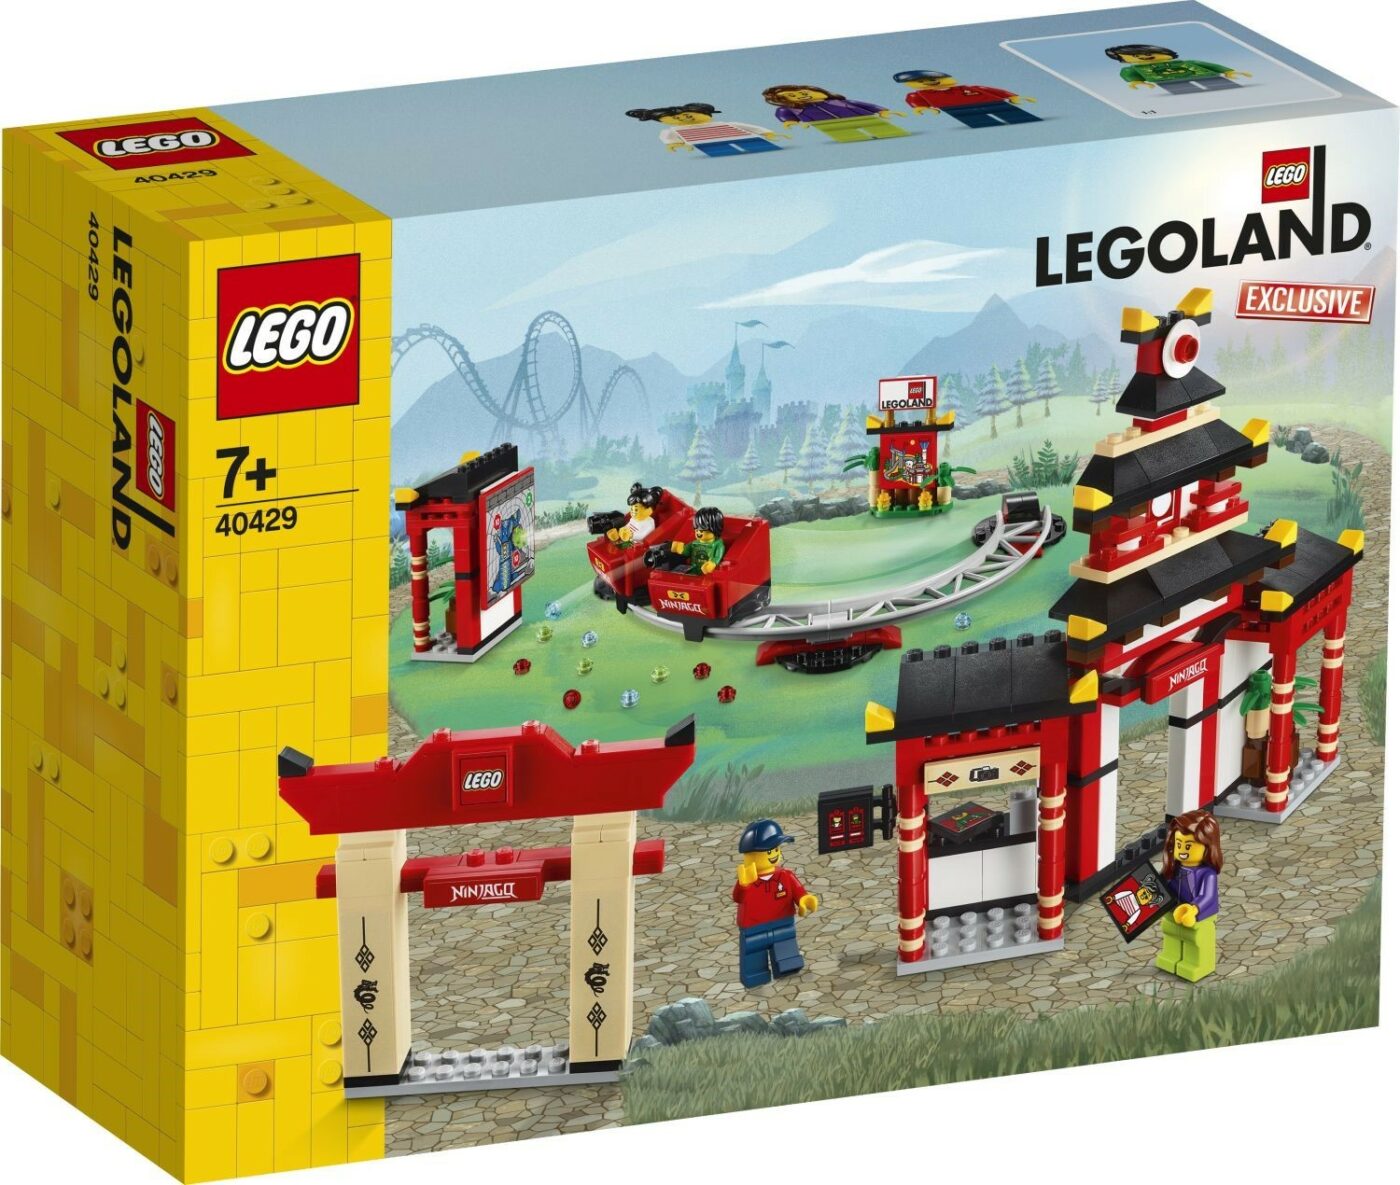 New LEGOLAND-exclusive 40710 Legoland Pirate Splash Battle revealed!7